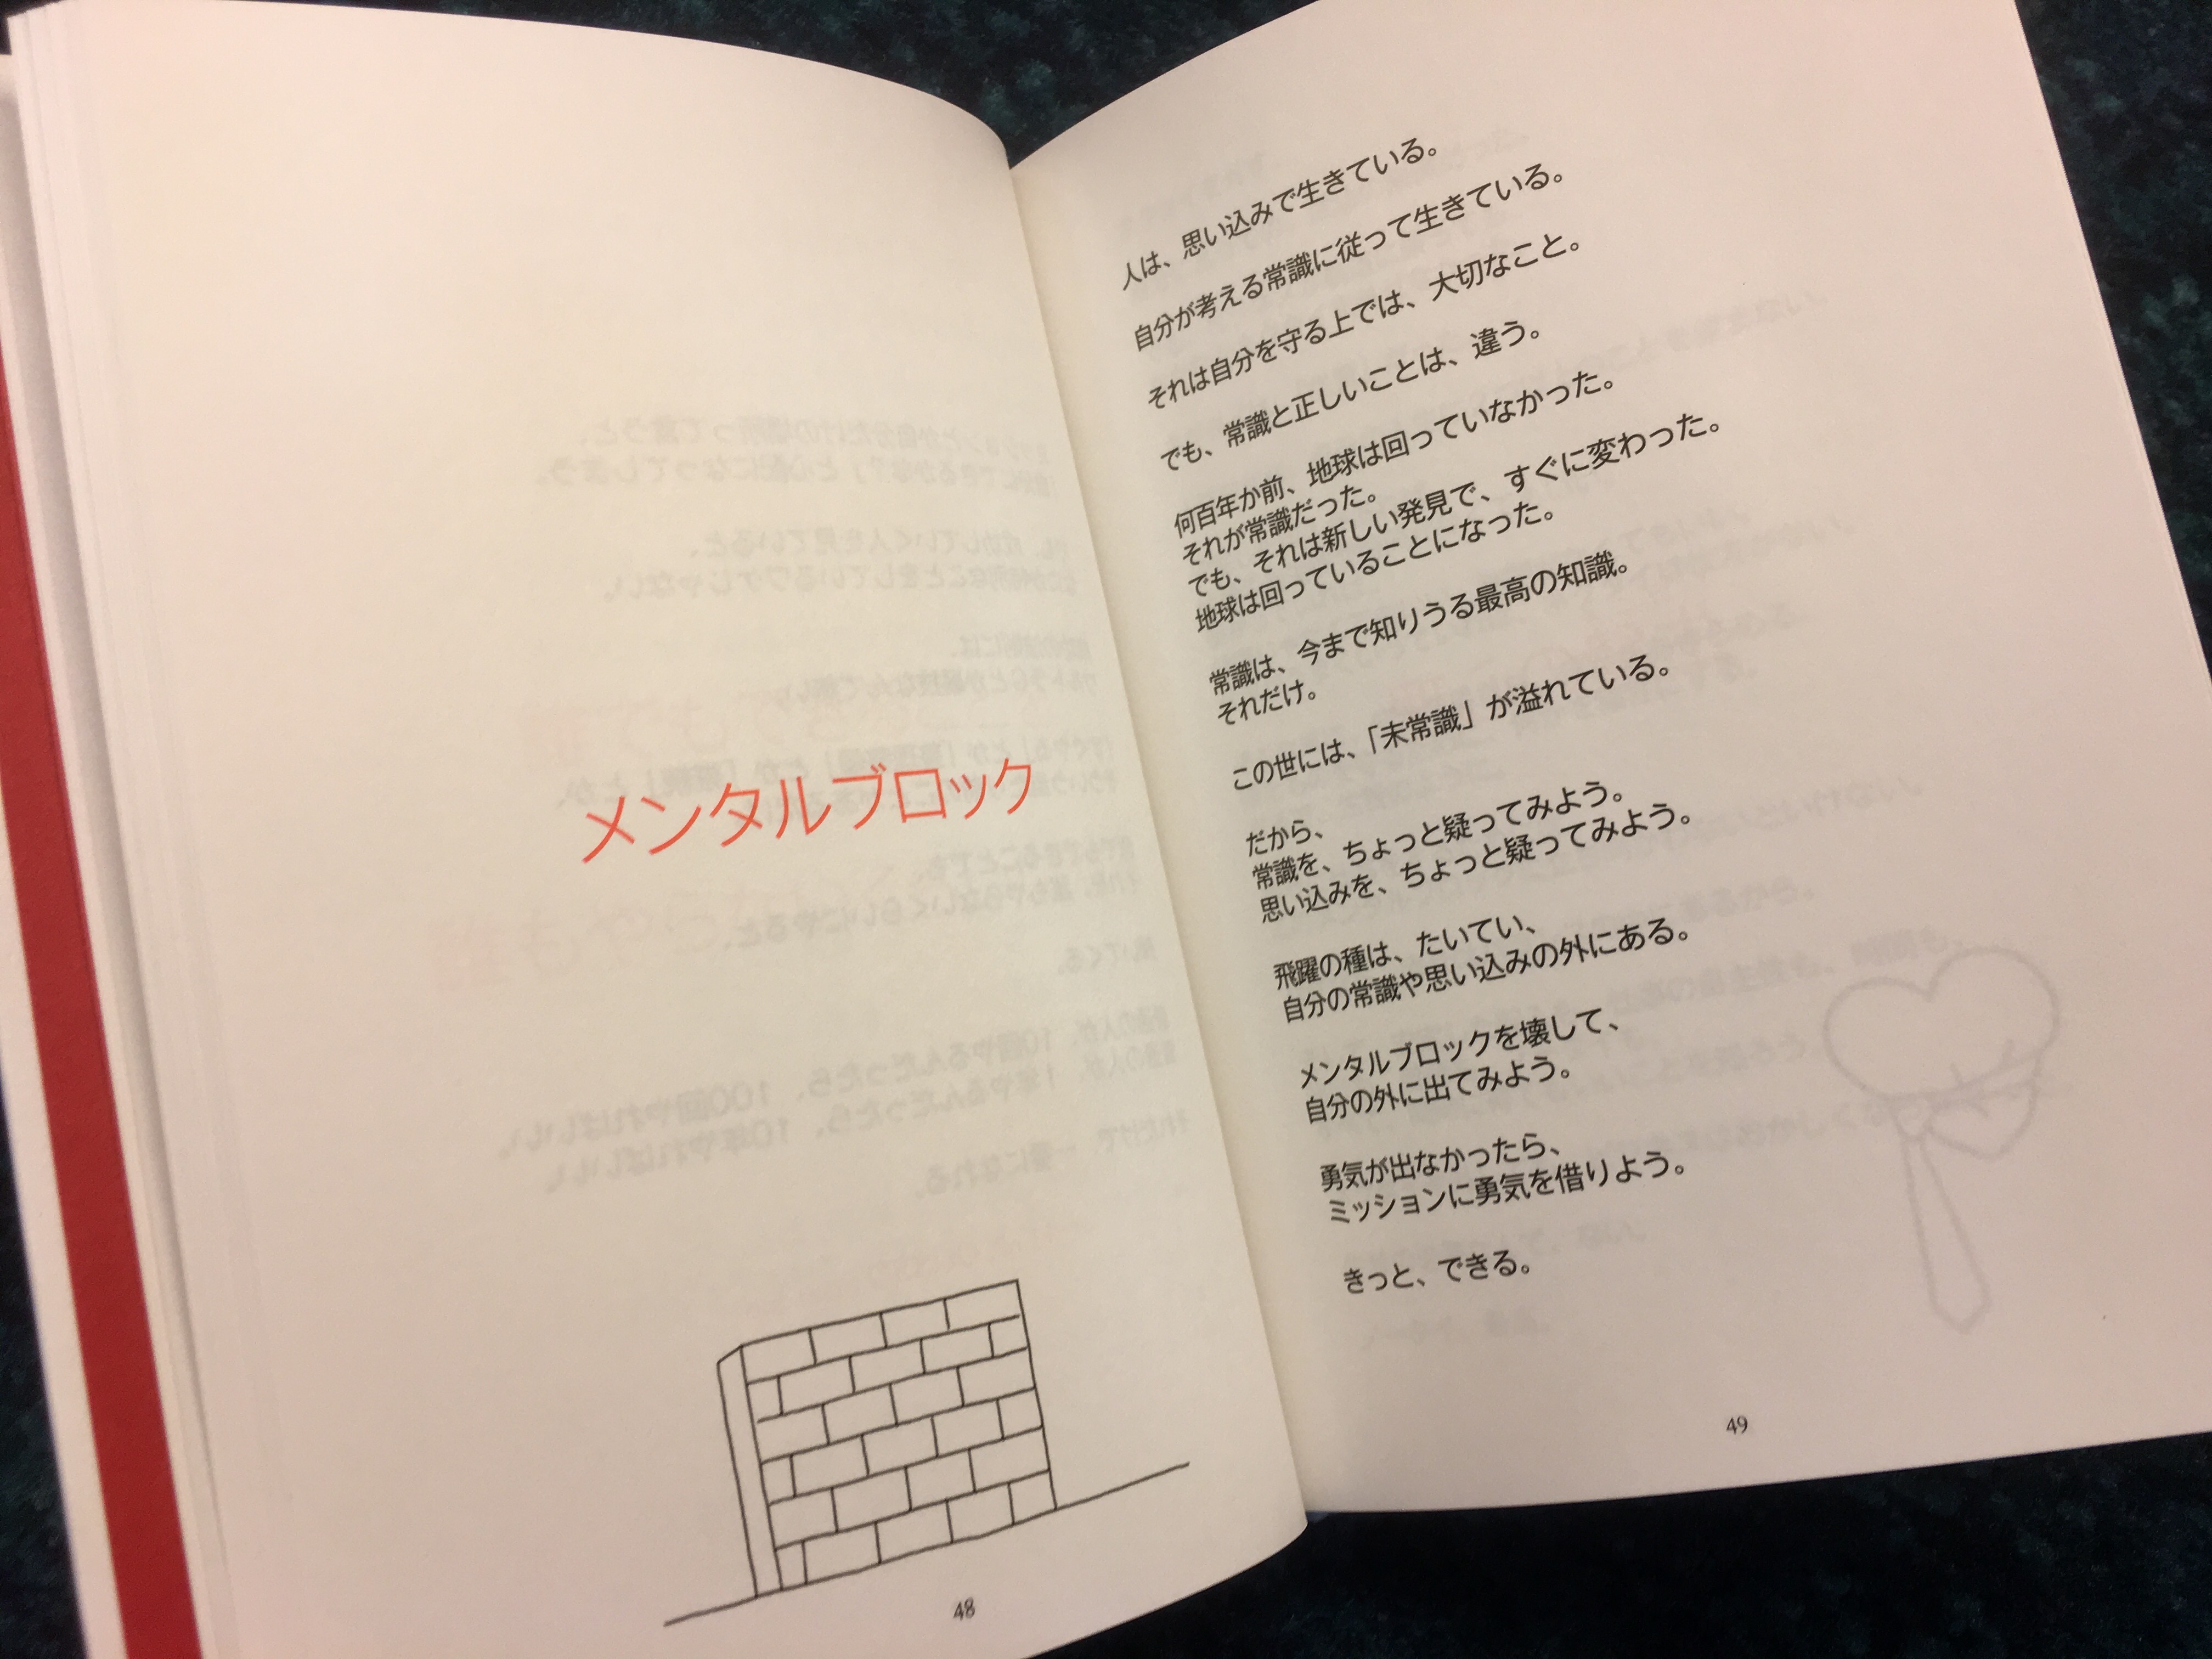 浜口隆則の経営論『戦わない経営』Vol.20:メンタルブロック